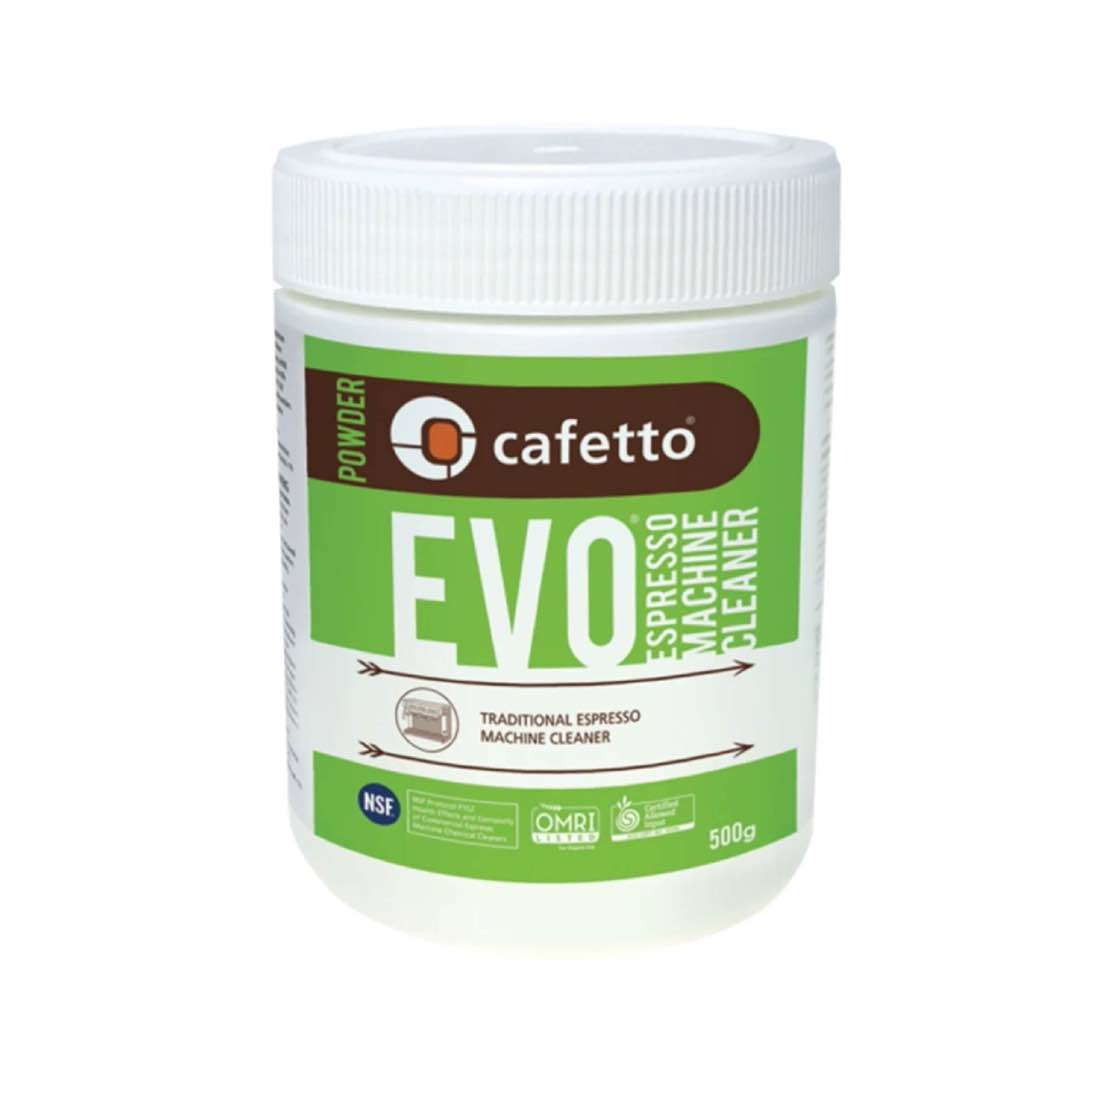 Cafetto EVO - Espresso Machine Cleaner - Image 1